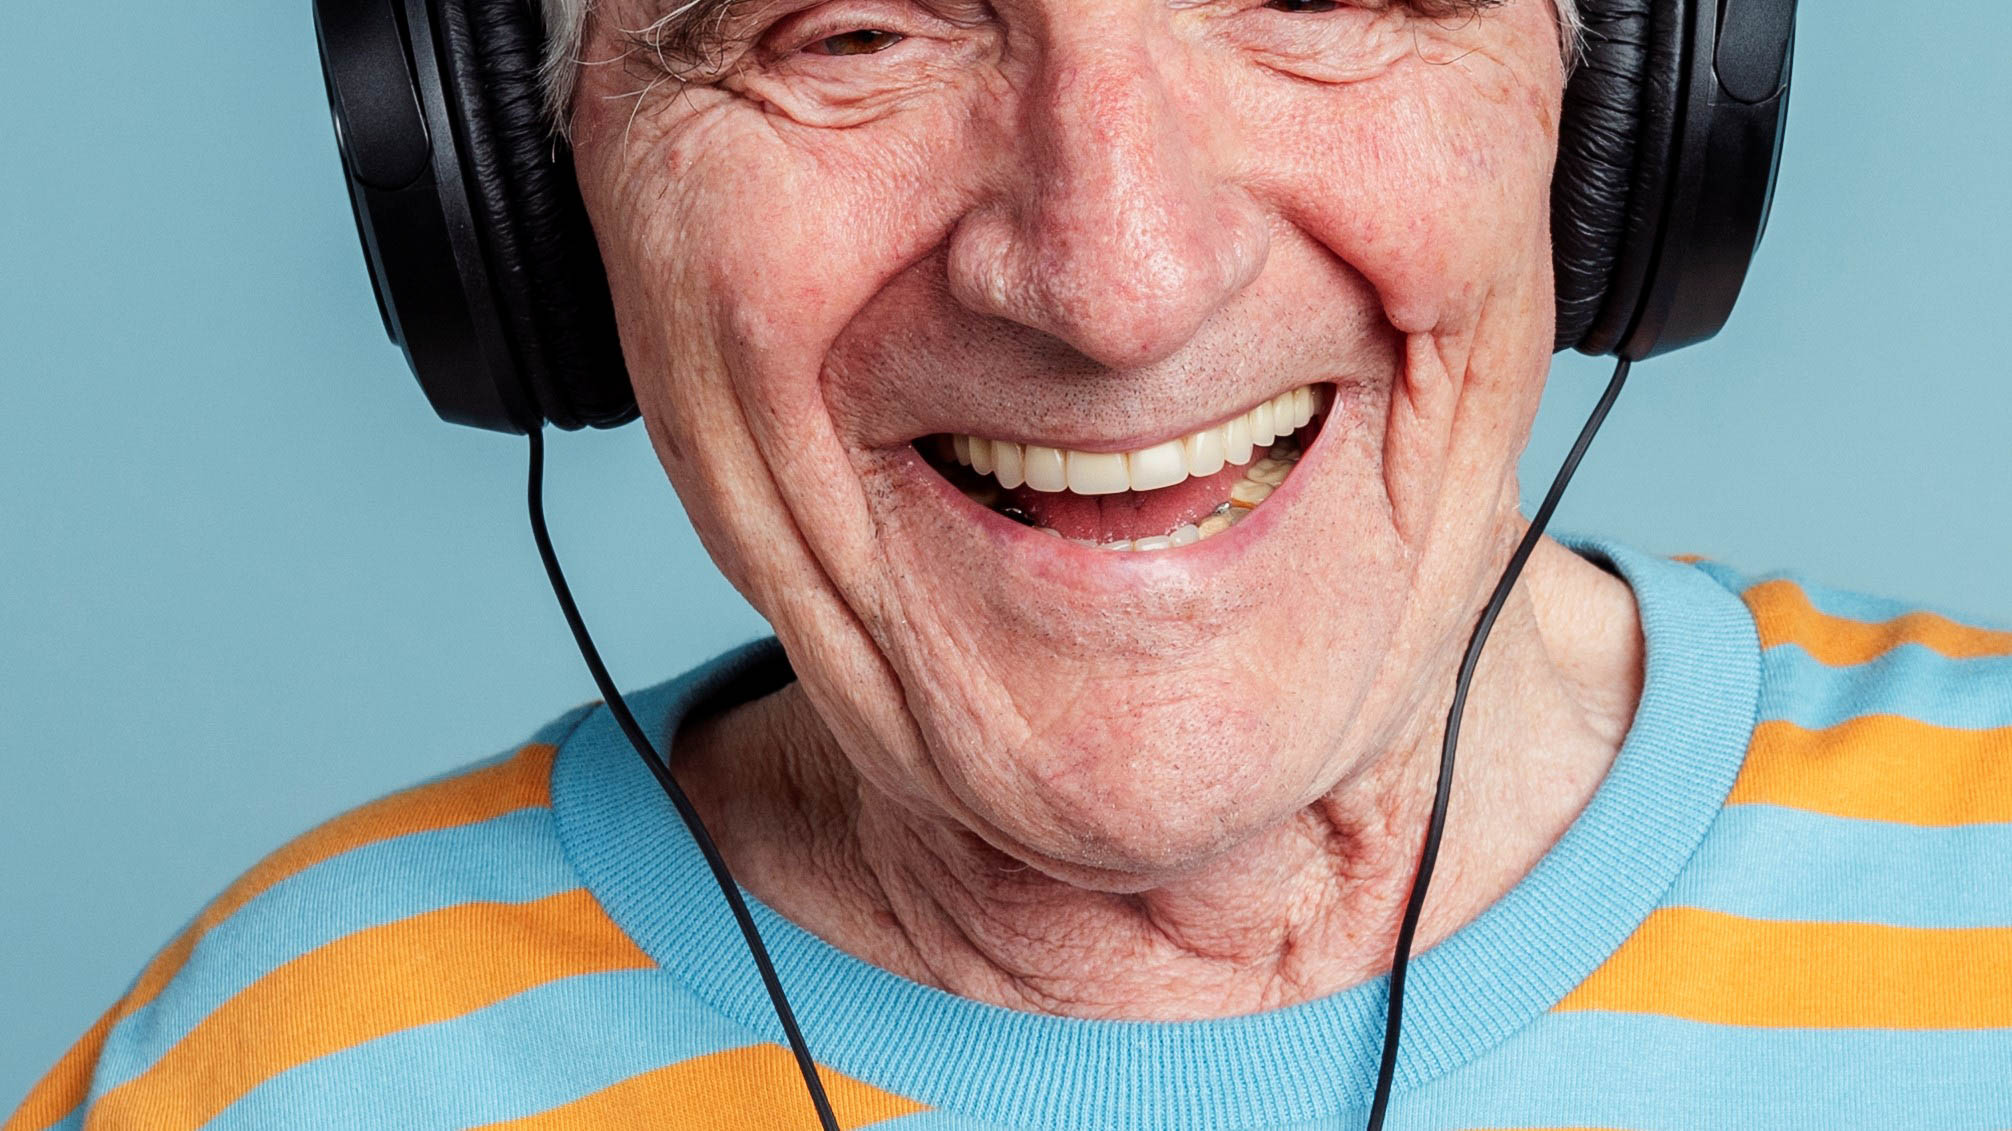 .איש זקן מחייך עם אוזניות על אוזניו